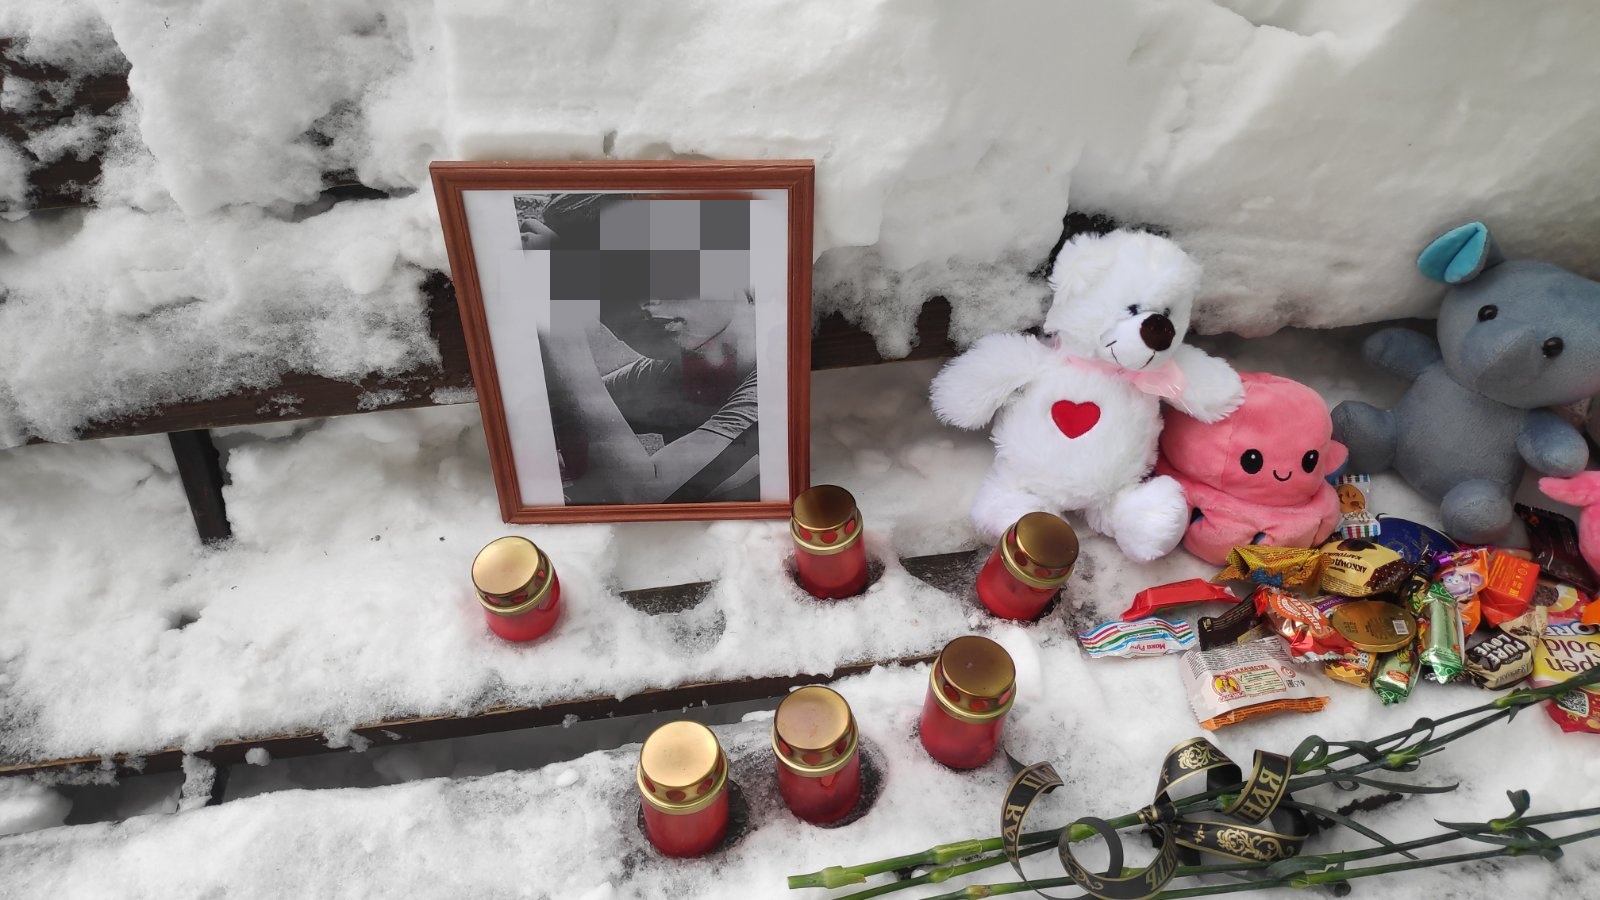 "Избил, убил и расчленил": стали известны подробности убийства подростка во Владимире